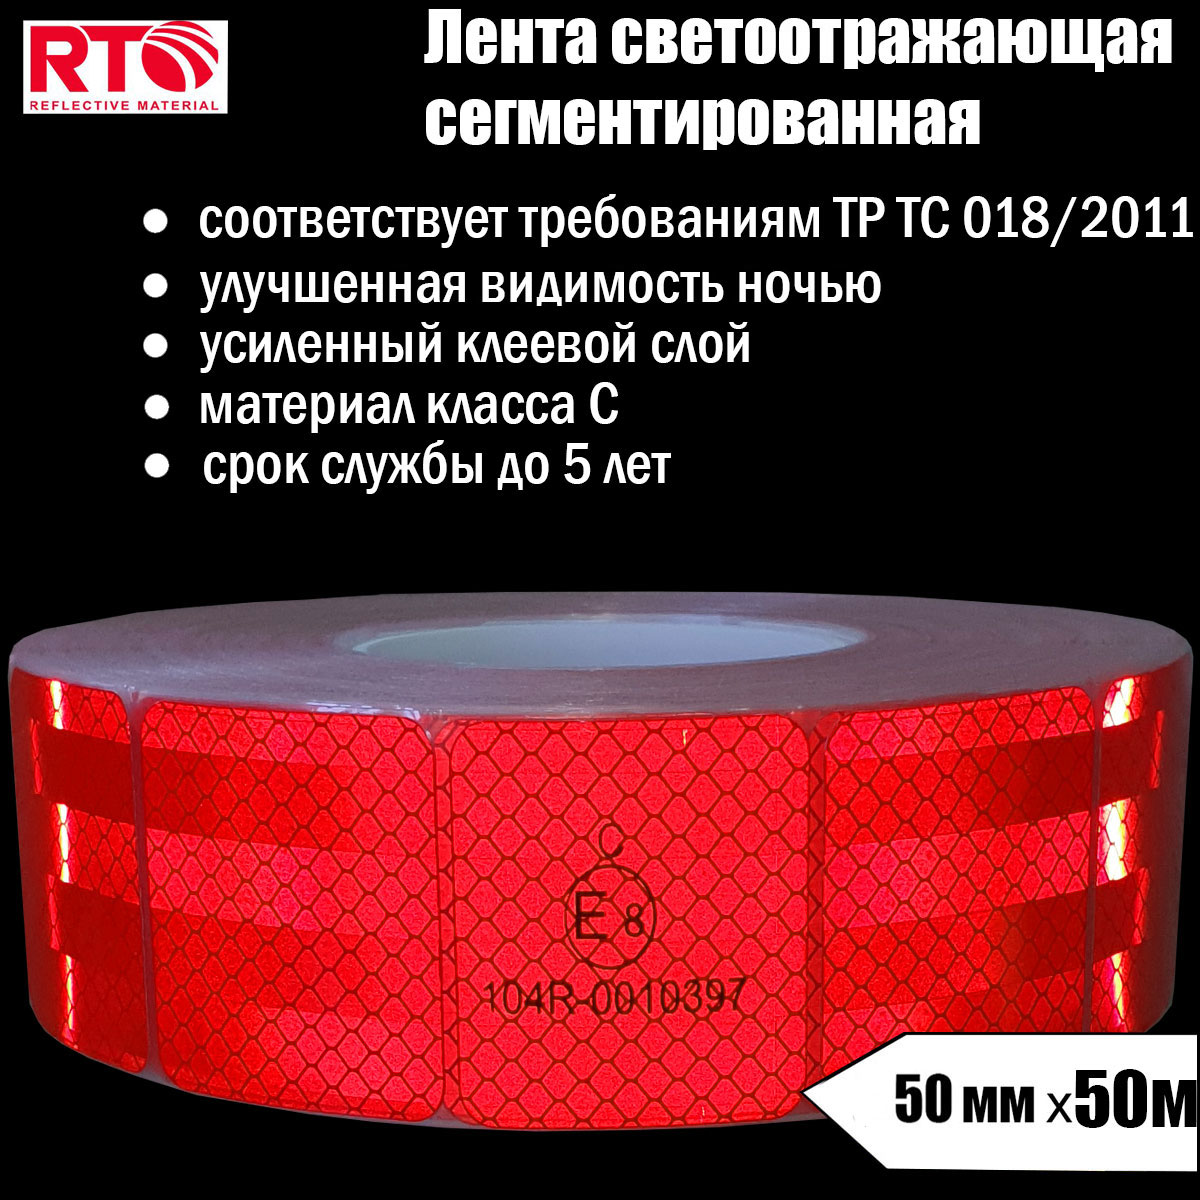 Лента светоотражающая сегментированная RTLITE RT-V104 для контурной маркировки, 50мм х 50м лента светоотражающая сегментированная rtlite rt v104 для контурной маркировки 50мм х 50м